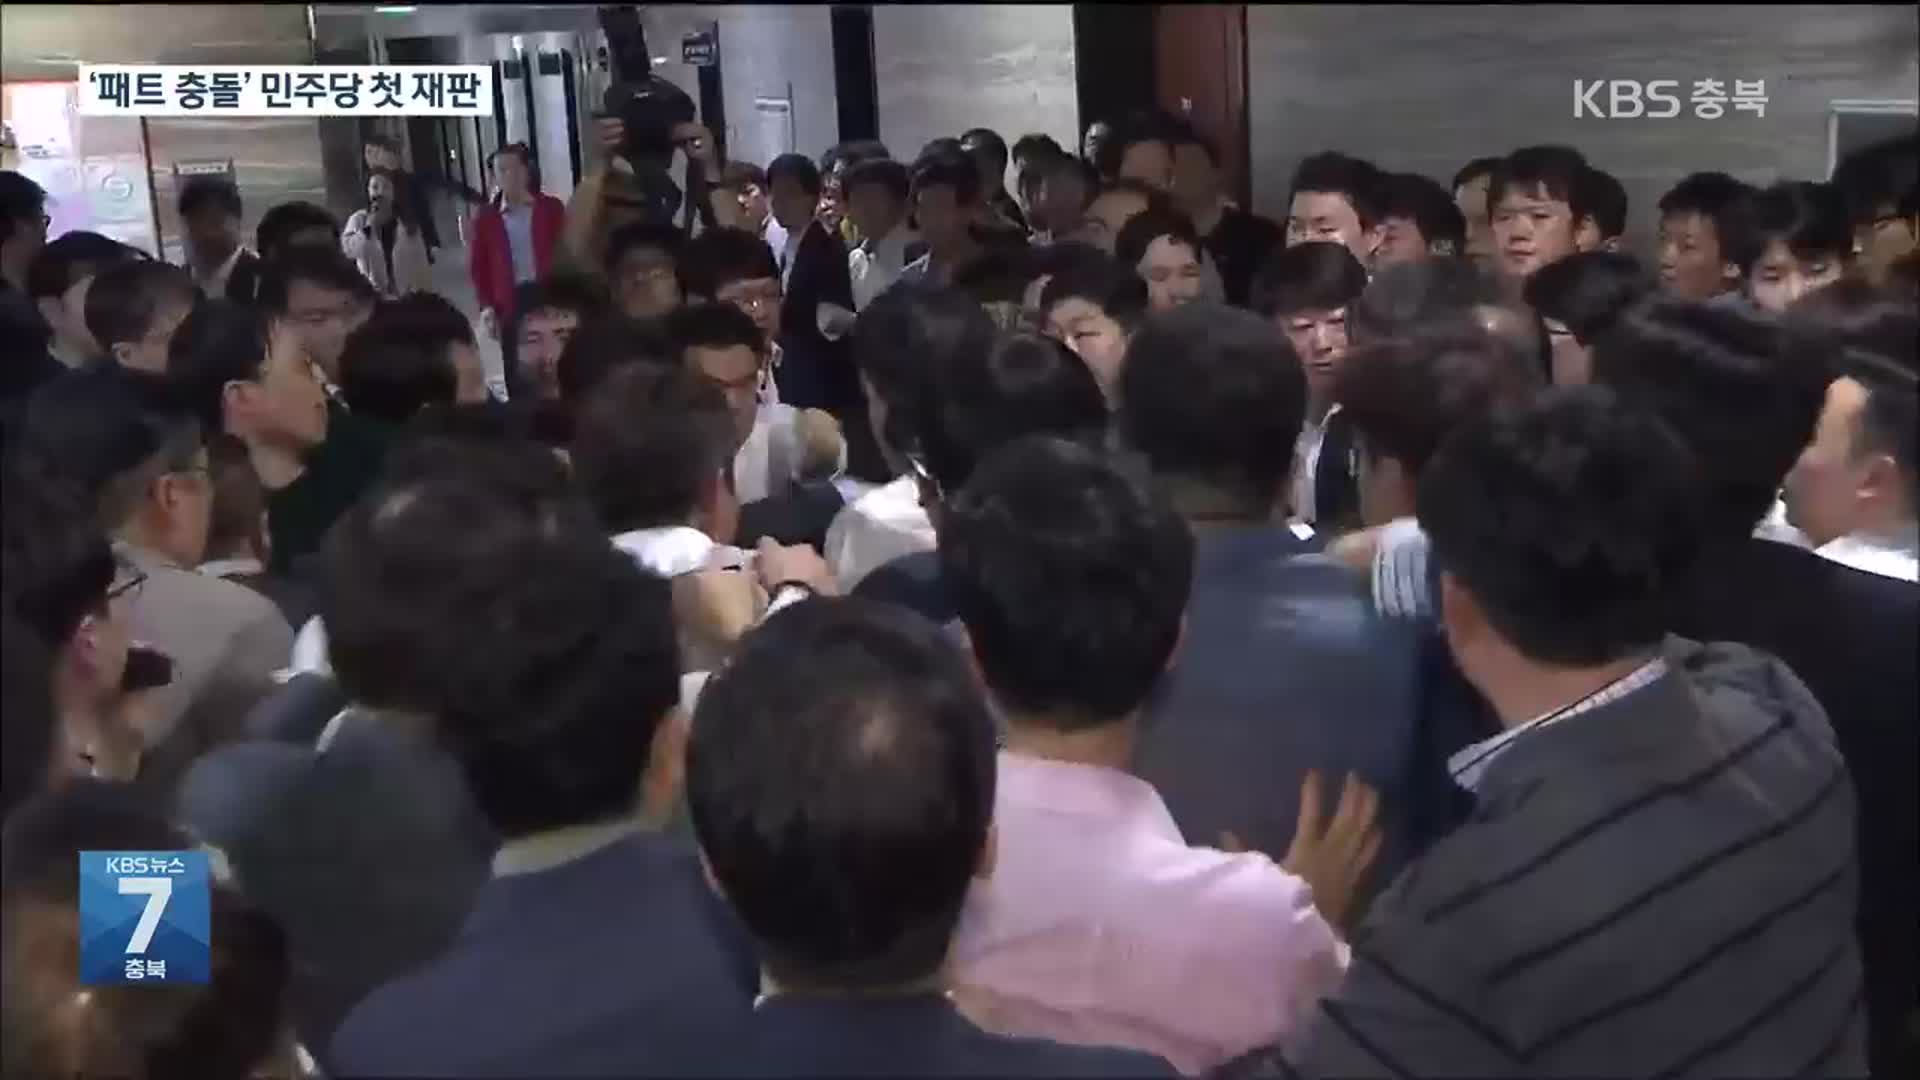 ‘패스트트랙 충돌’ 박주민 등 민주당 10명 첫 공판